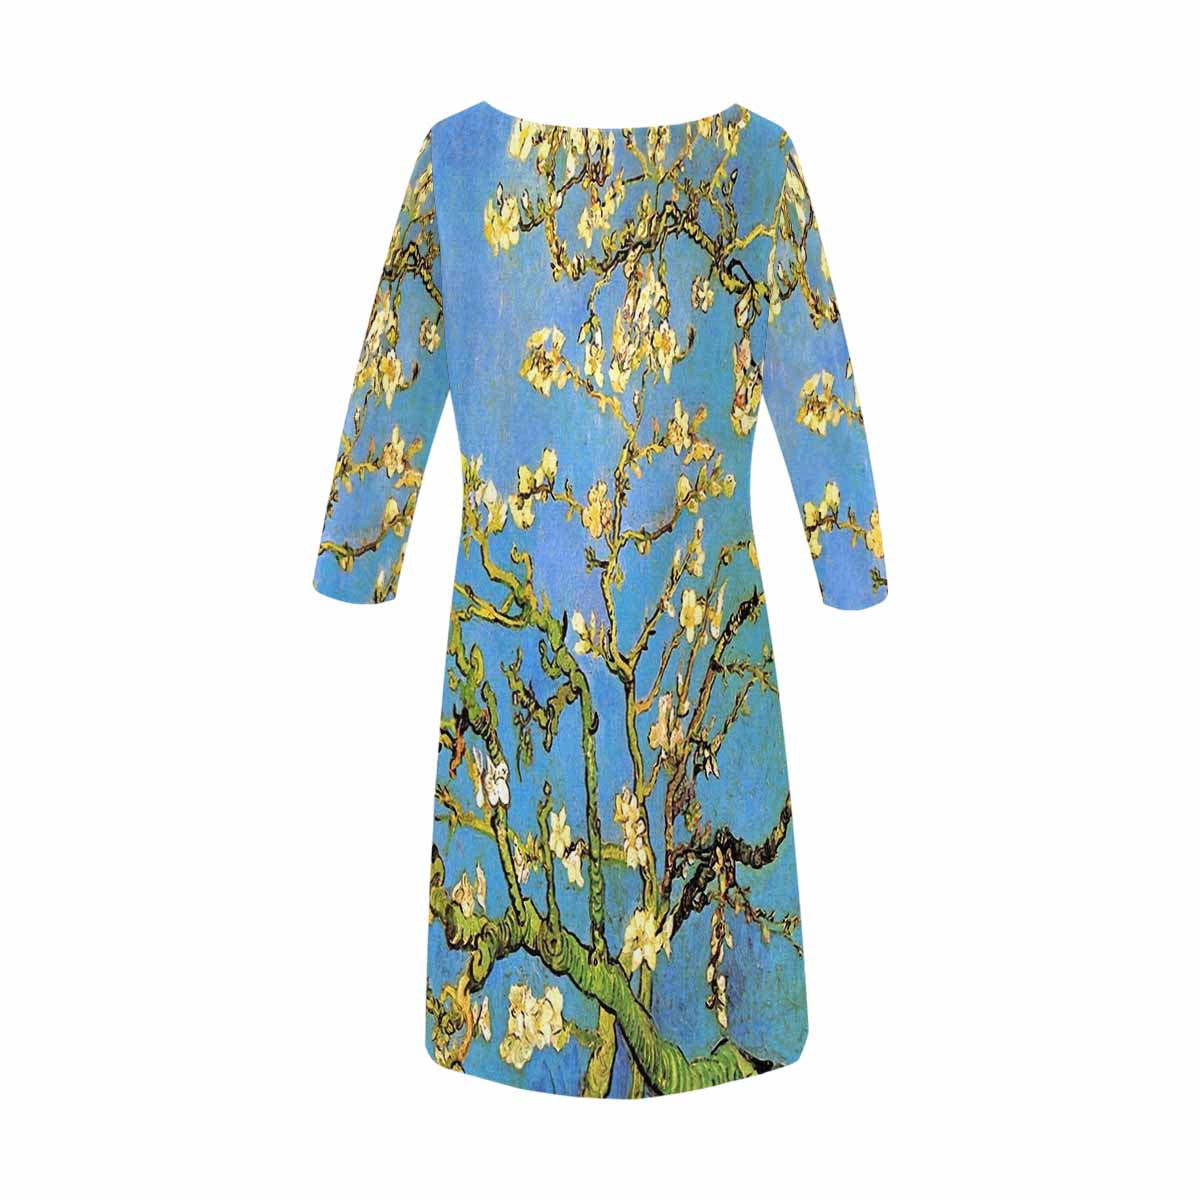 Vintage floral loose dress, model D29532 Design 20